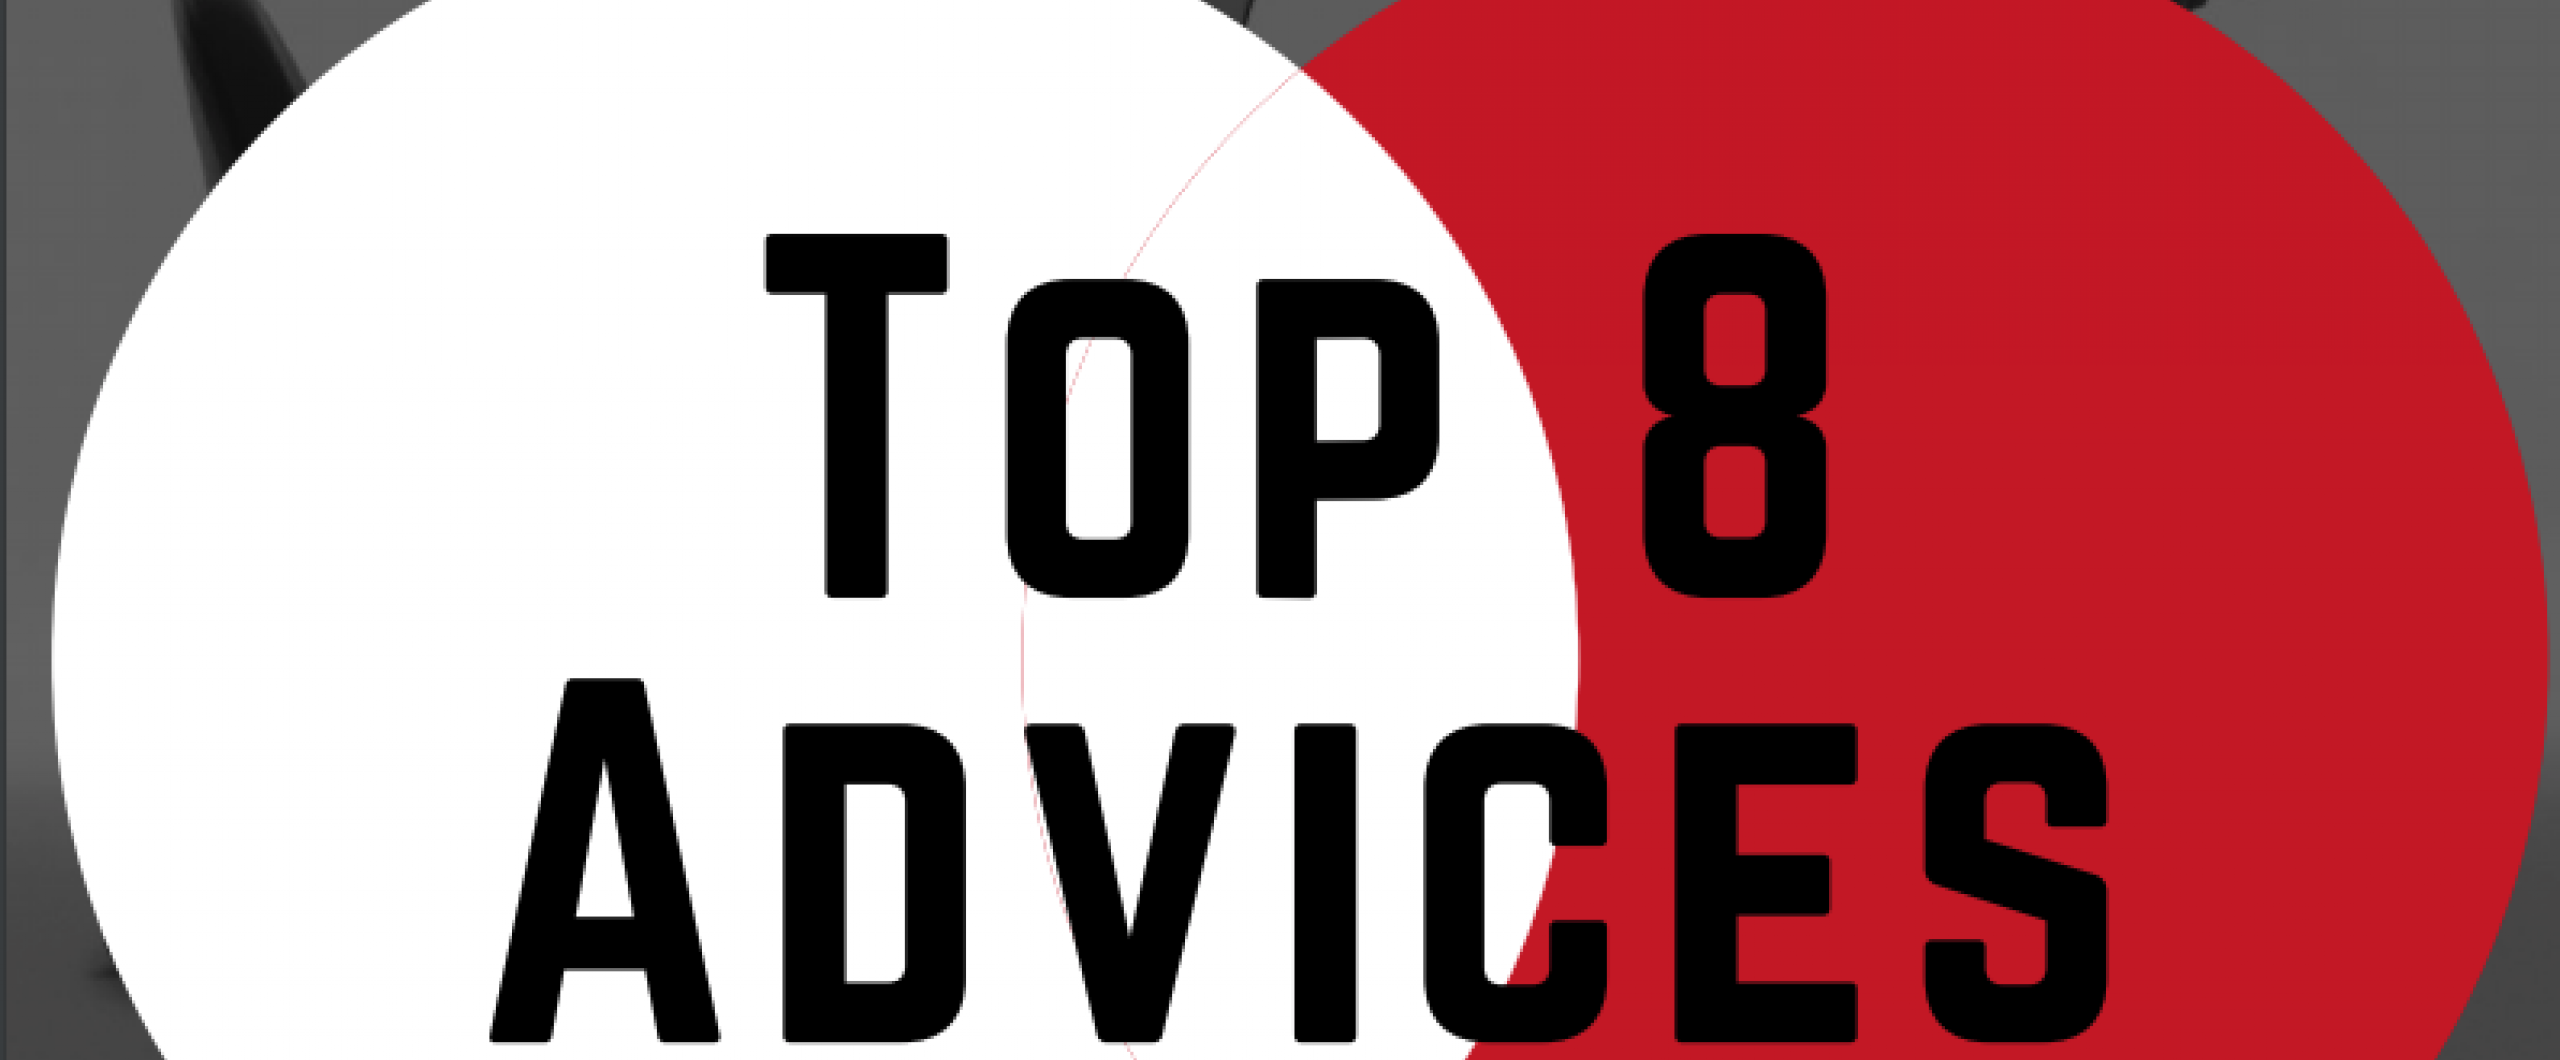 8 advices